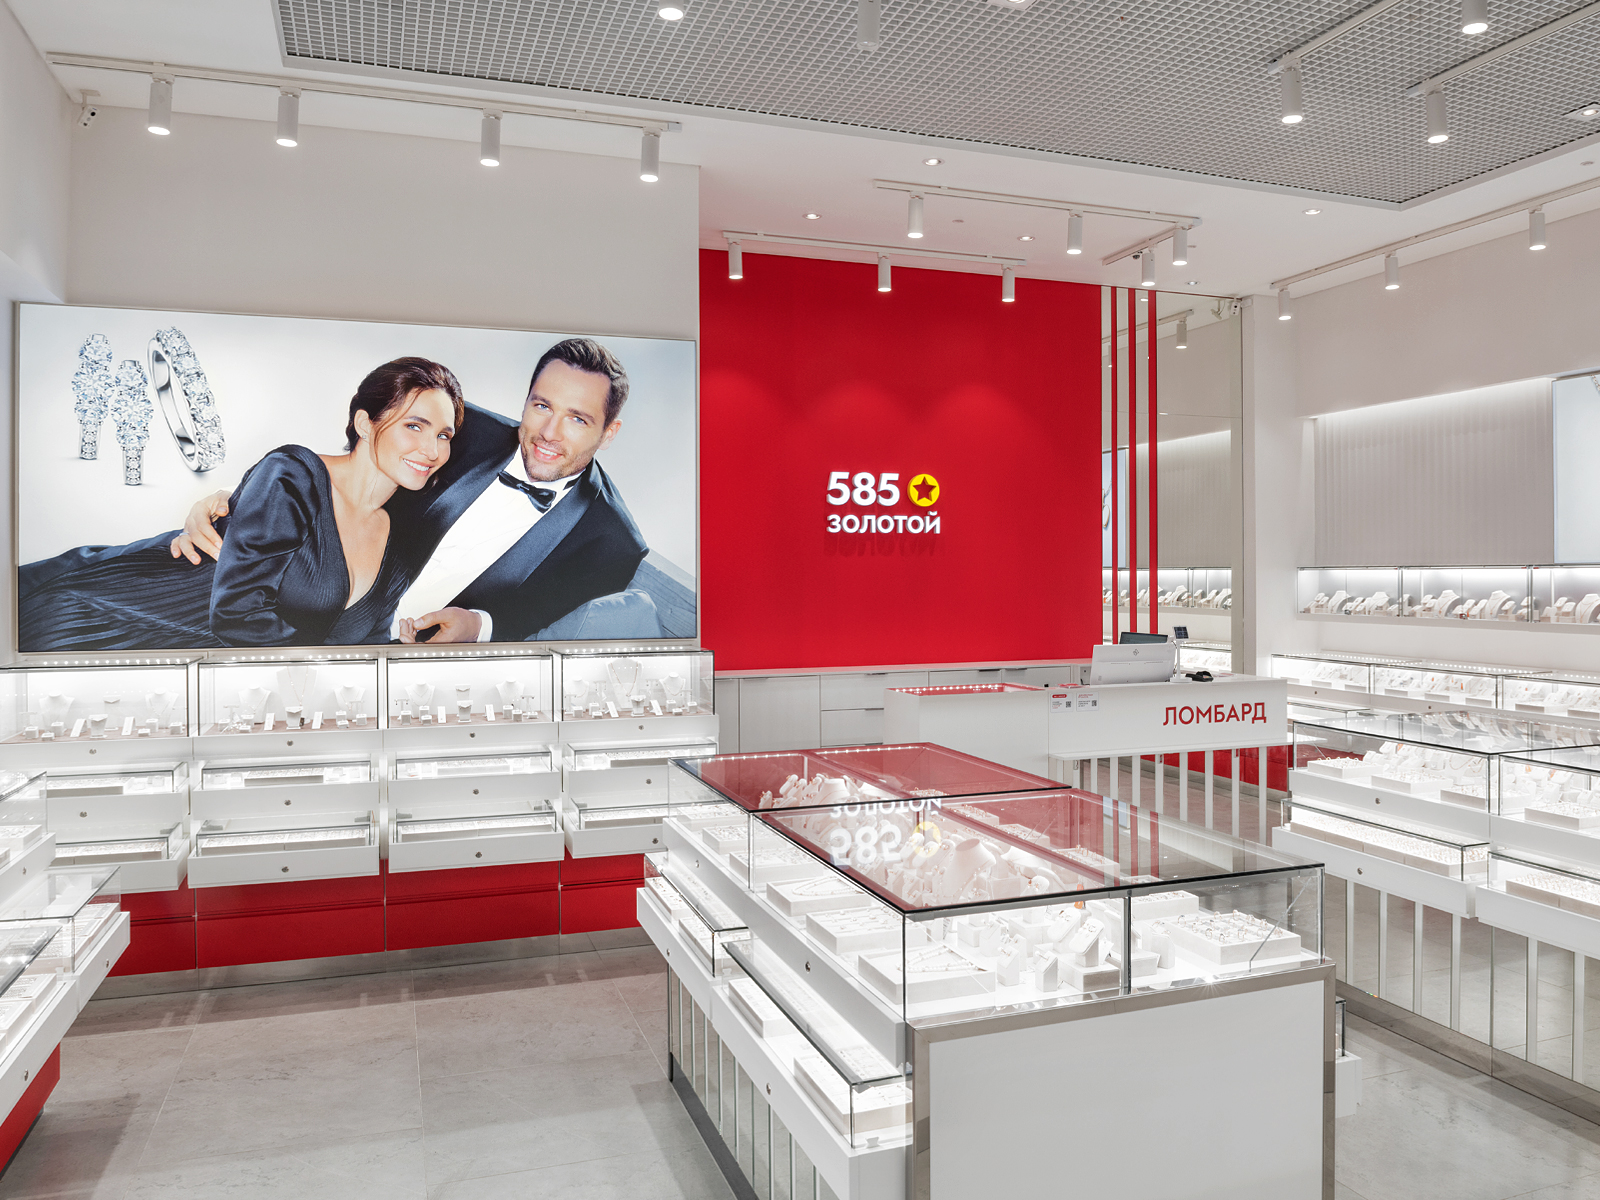 «585*ЗОЛОТОЙ» представила обновленную айдентику бренда в новых магазинах